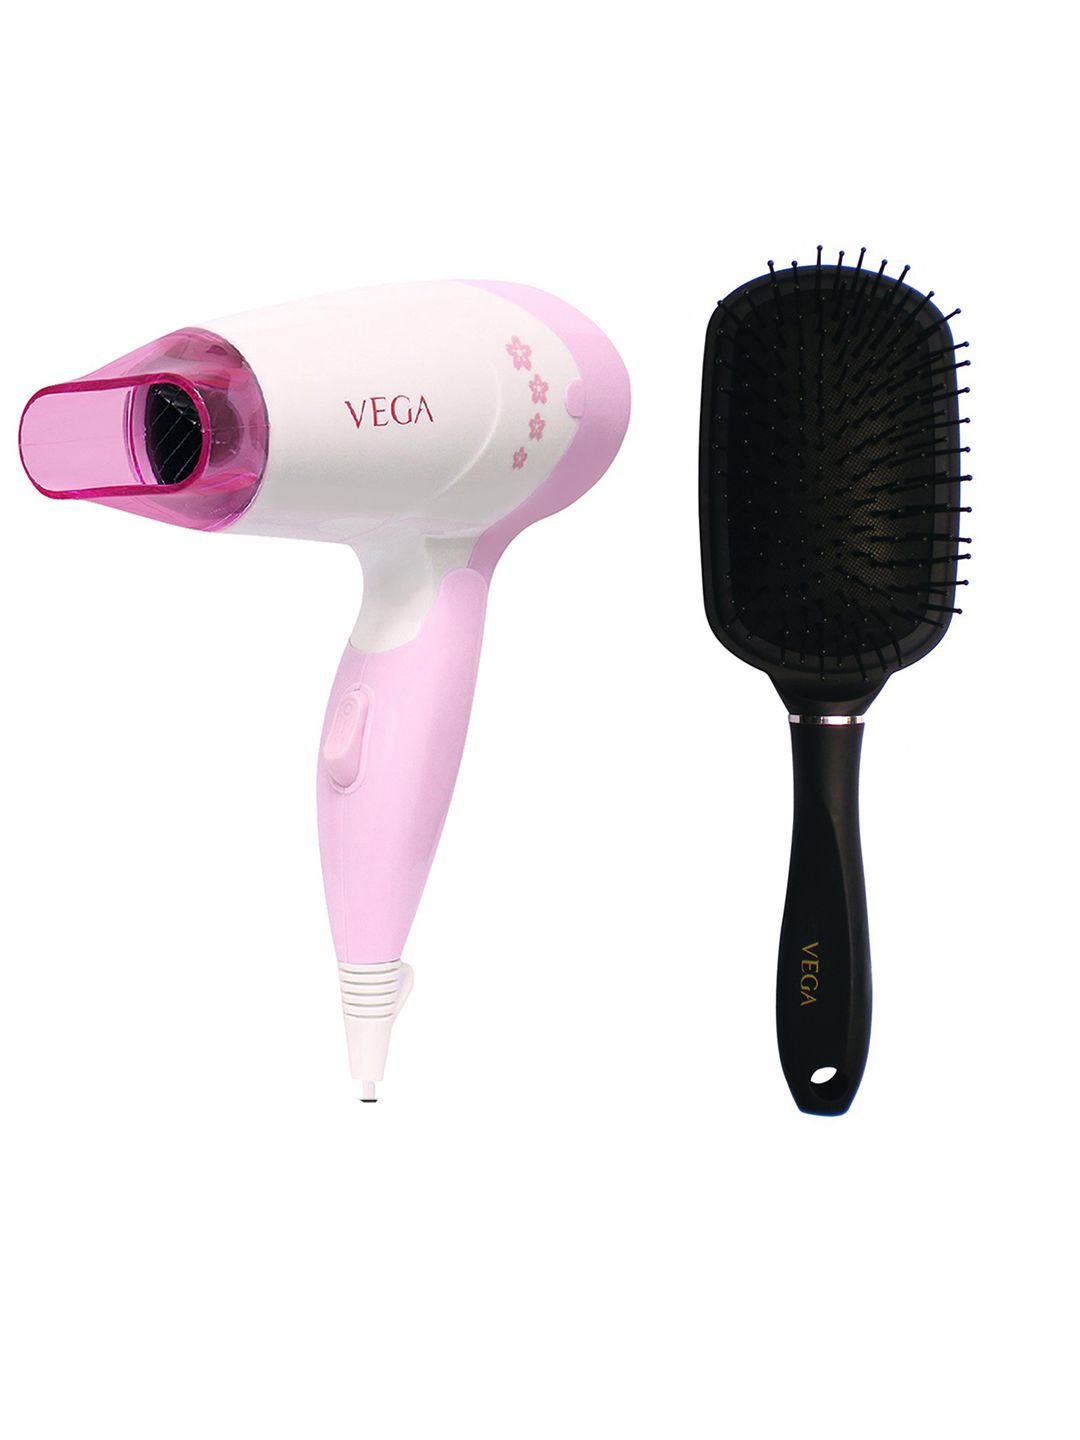 VEGA Unisex Insta Glam 1000 Hair Dryer & Premium Collection Paddle Hair Brush Price in India